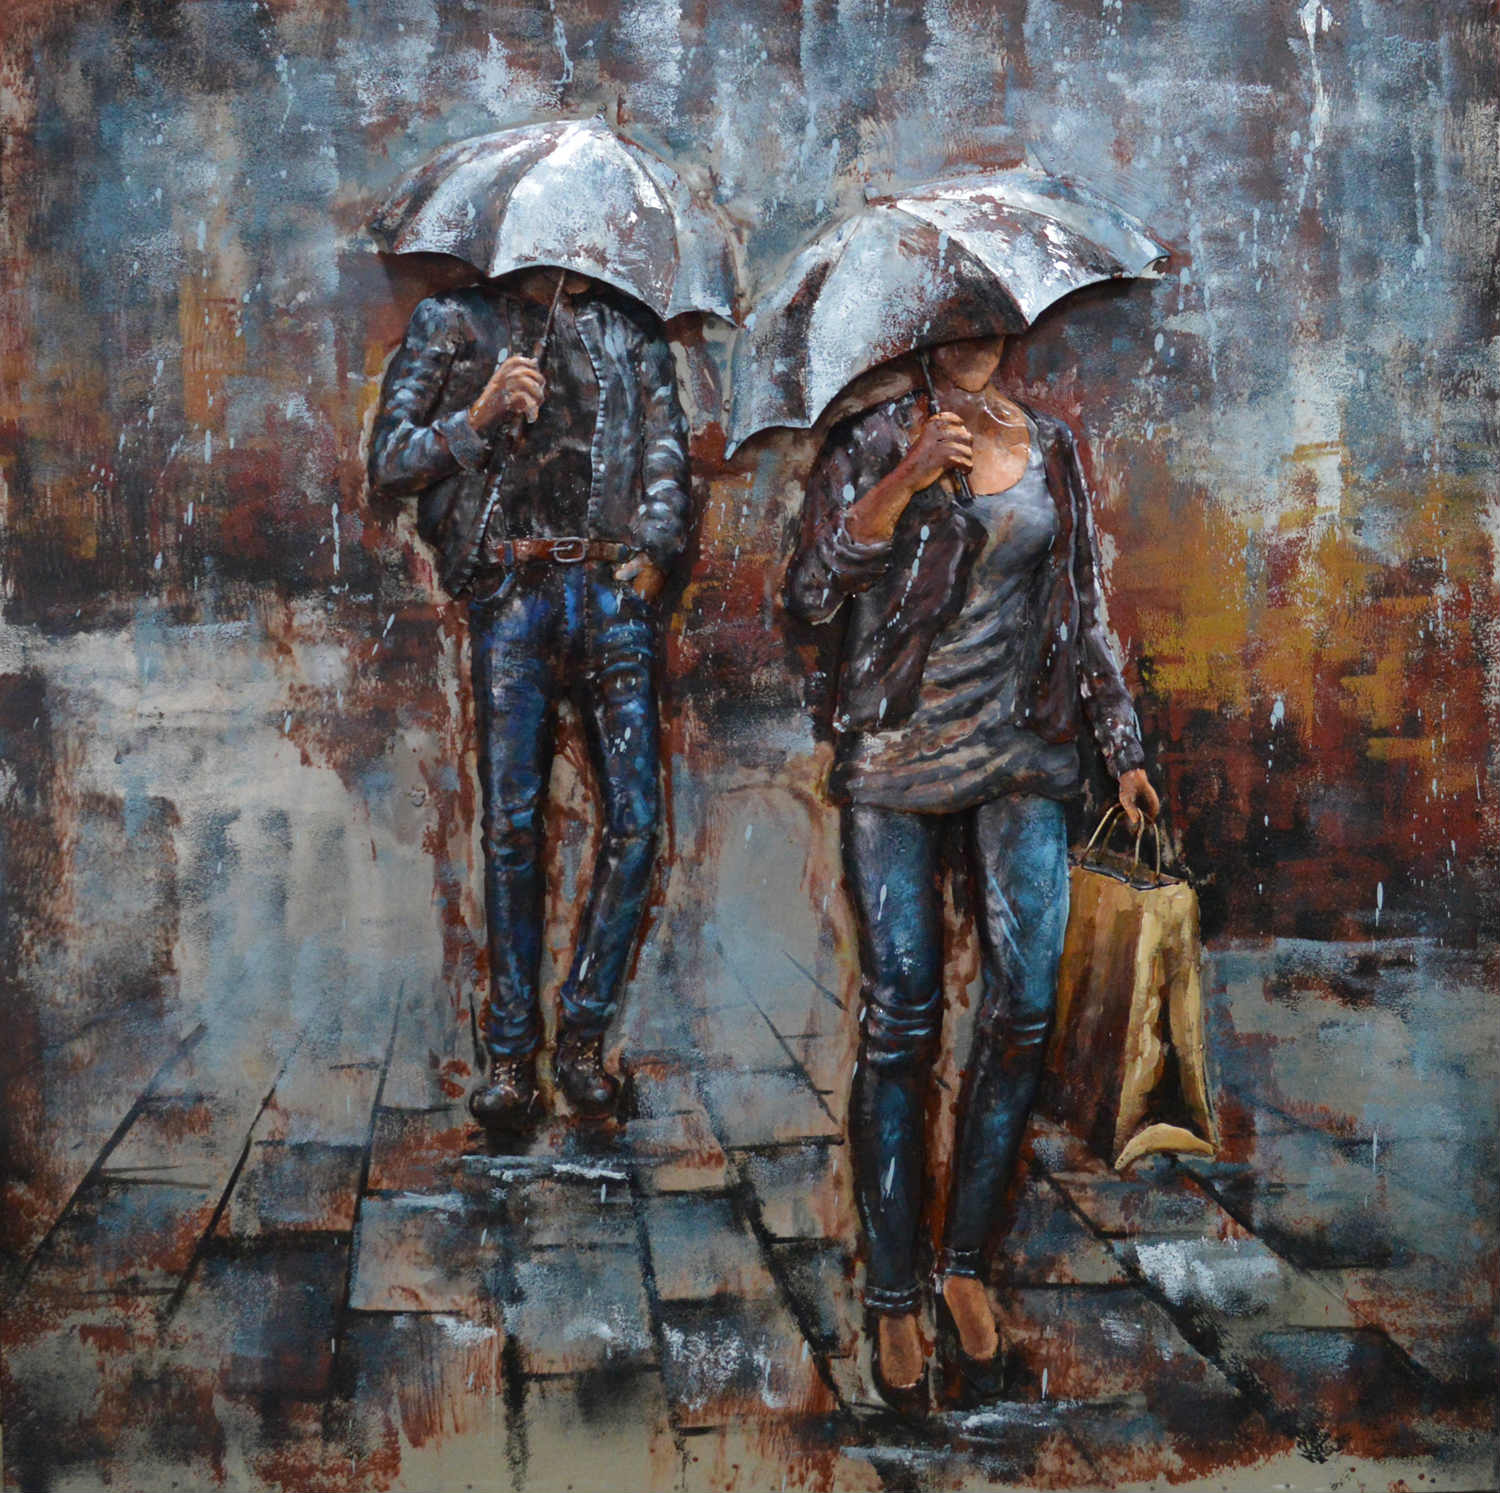 Metalen schilderij "Mensen met paraplu" te koop @ Betaalbarekunst.nl. De geverfde metalen onderdelen schilderij veel diepte en